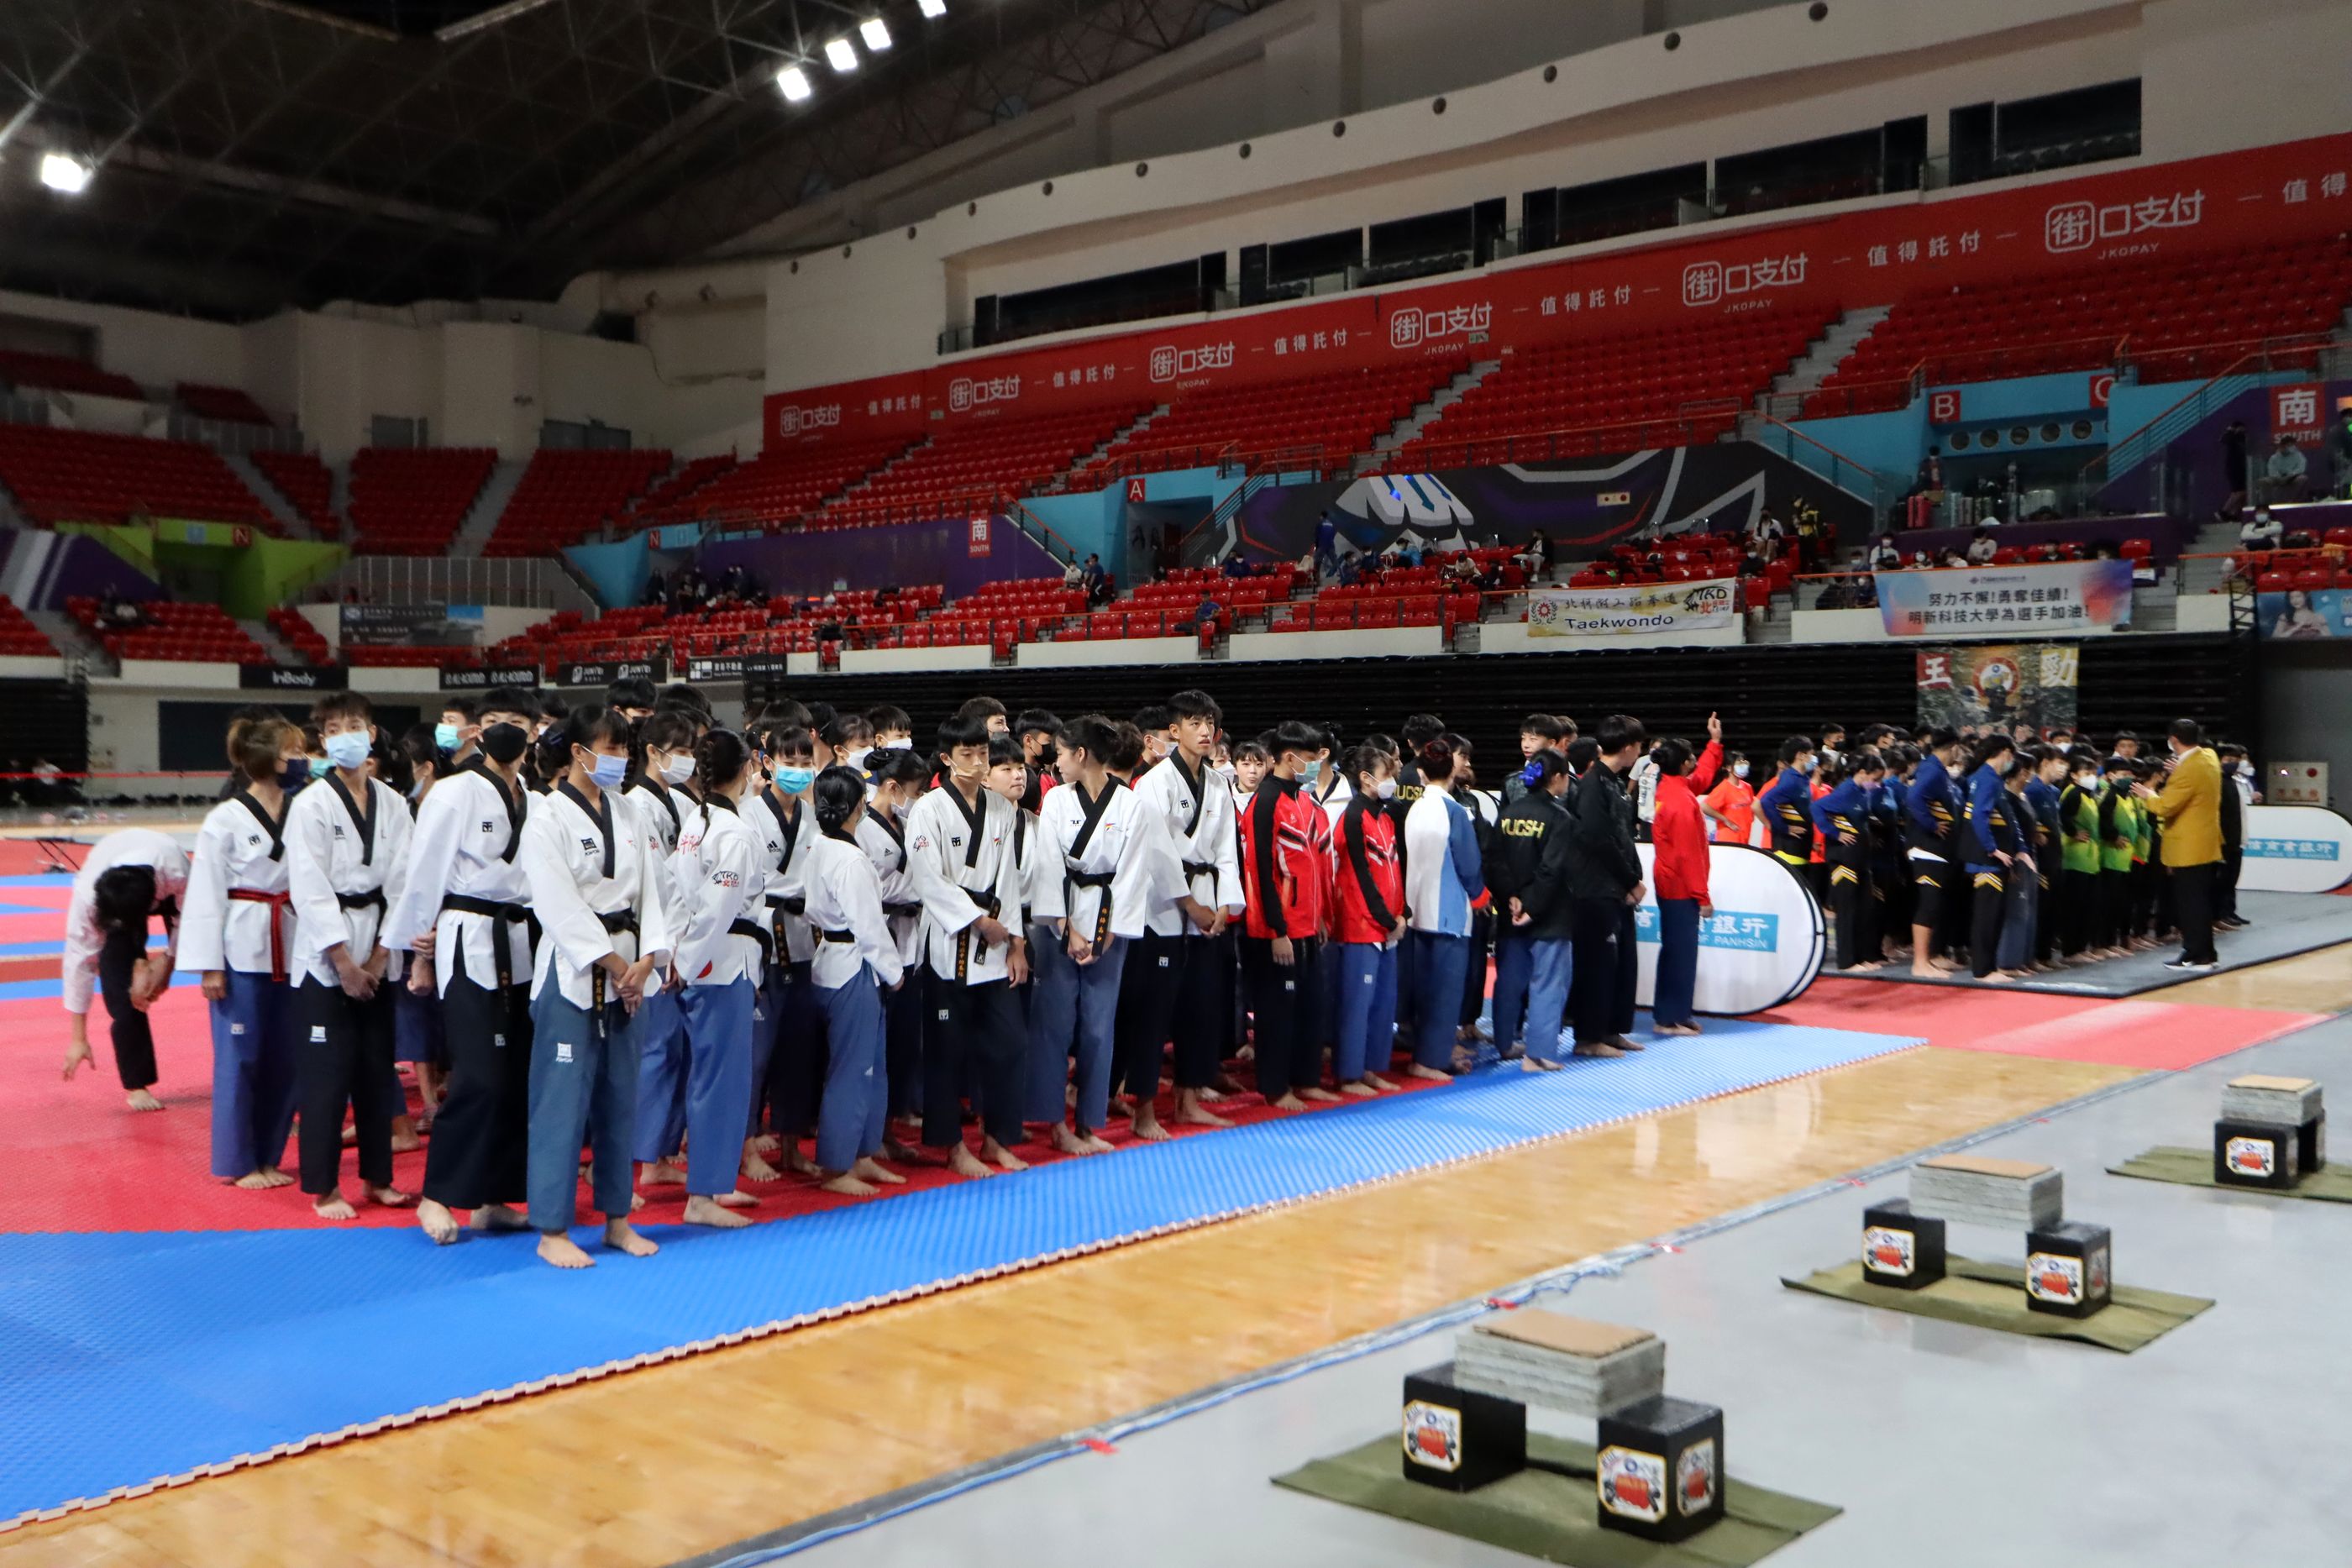 全中錦跆拳道賽從新竹縣移師至臺中市舉行。大會提供